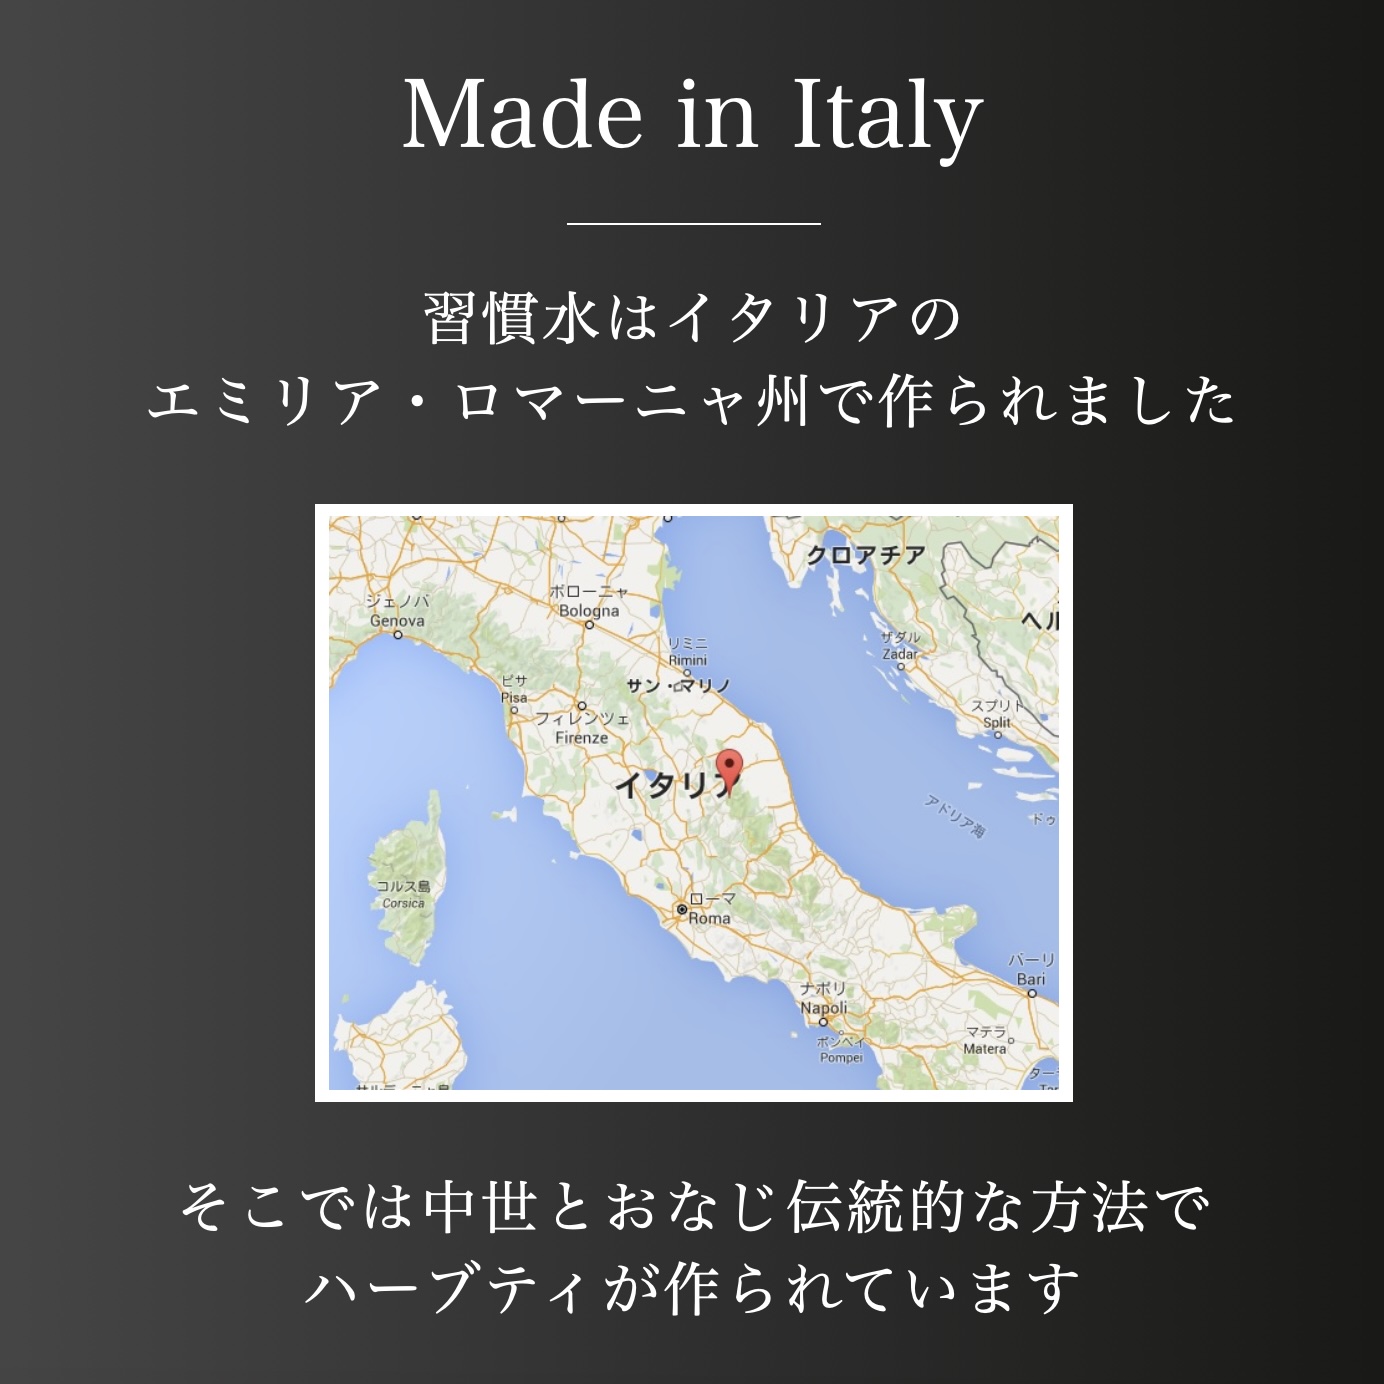 オアディスワンのハーブティ「習慣水」はイタリアで作られたことを説明